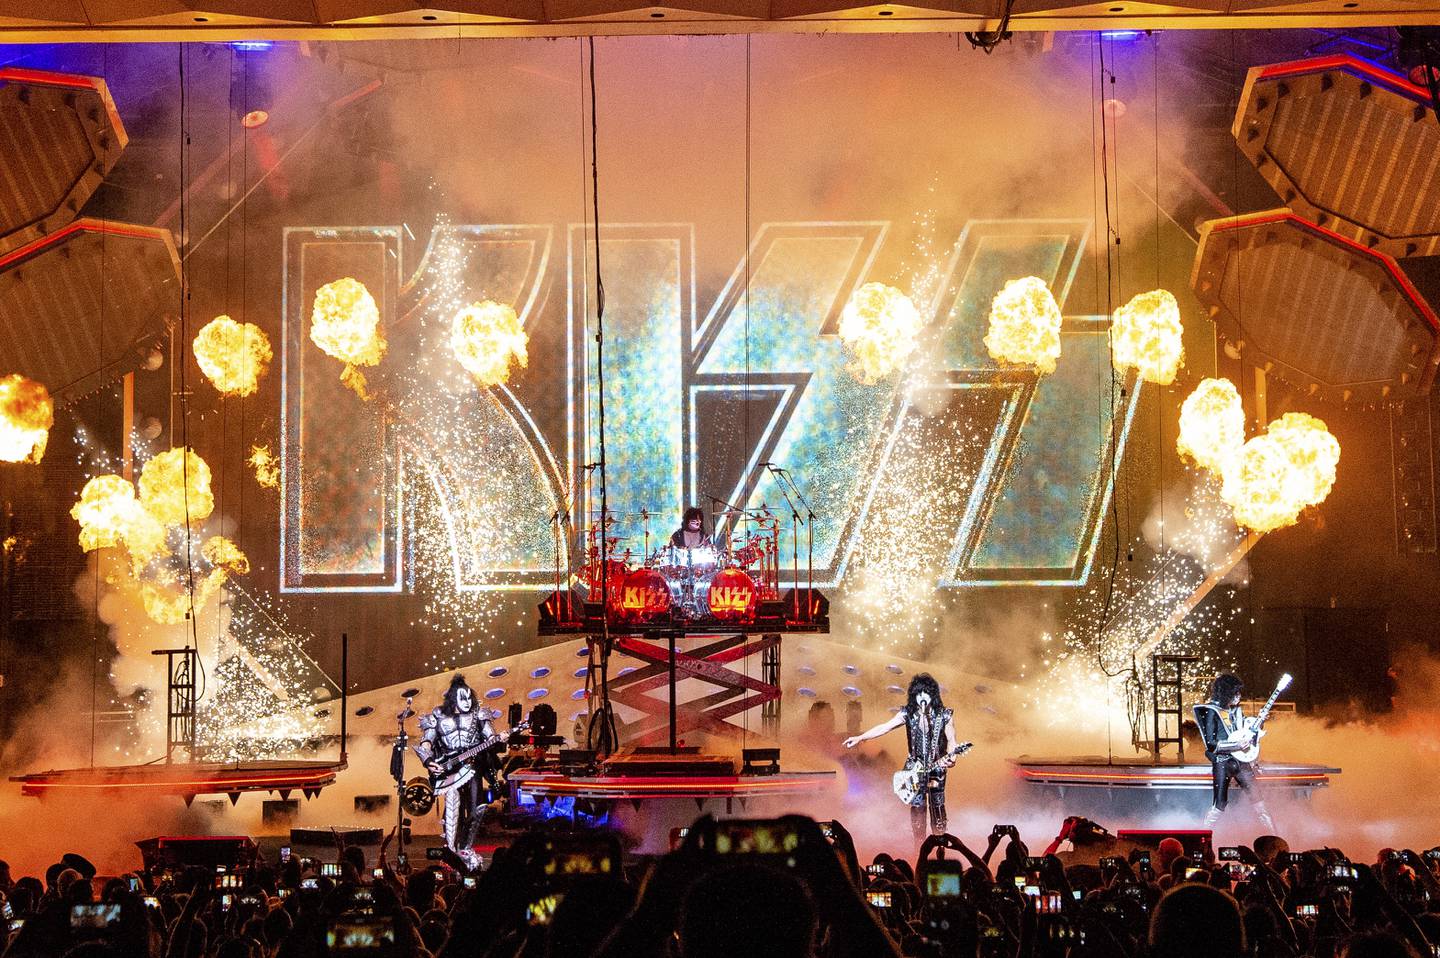 Kiss anno 2019: Gene Simmons, Eric Singer, Paul Stanley og Tommy Thayer på scenen i Cincinnati. Nå kommer filmen om bandets første år, tidlig på 1970-tallet.